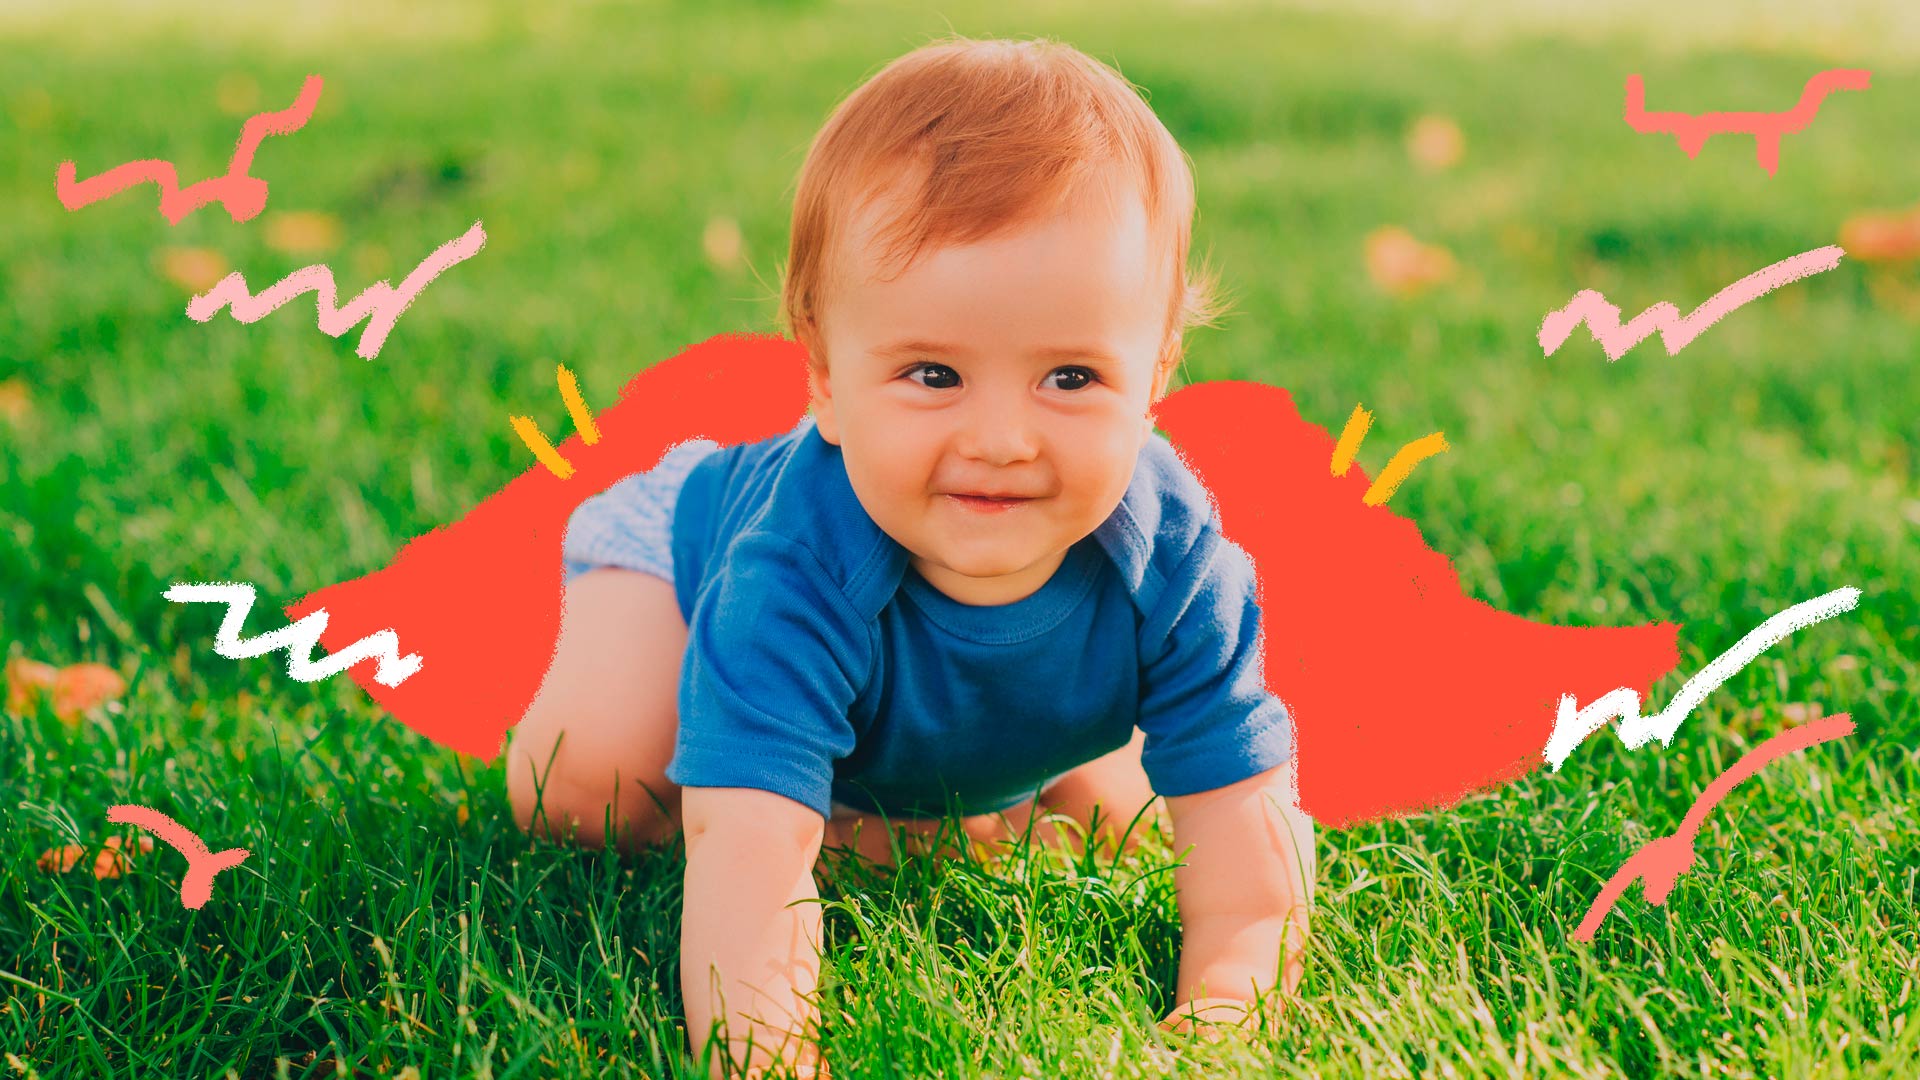 Foto de um bebê loirinho, vestindo roupas em tons azulados, está engatinhando num gramado e sorrindo